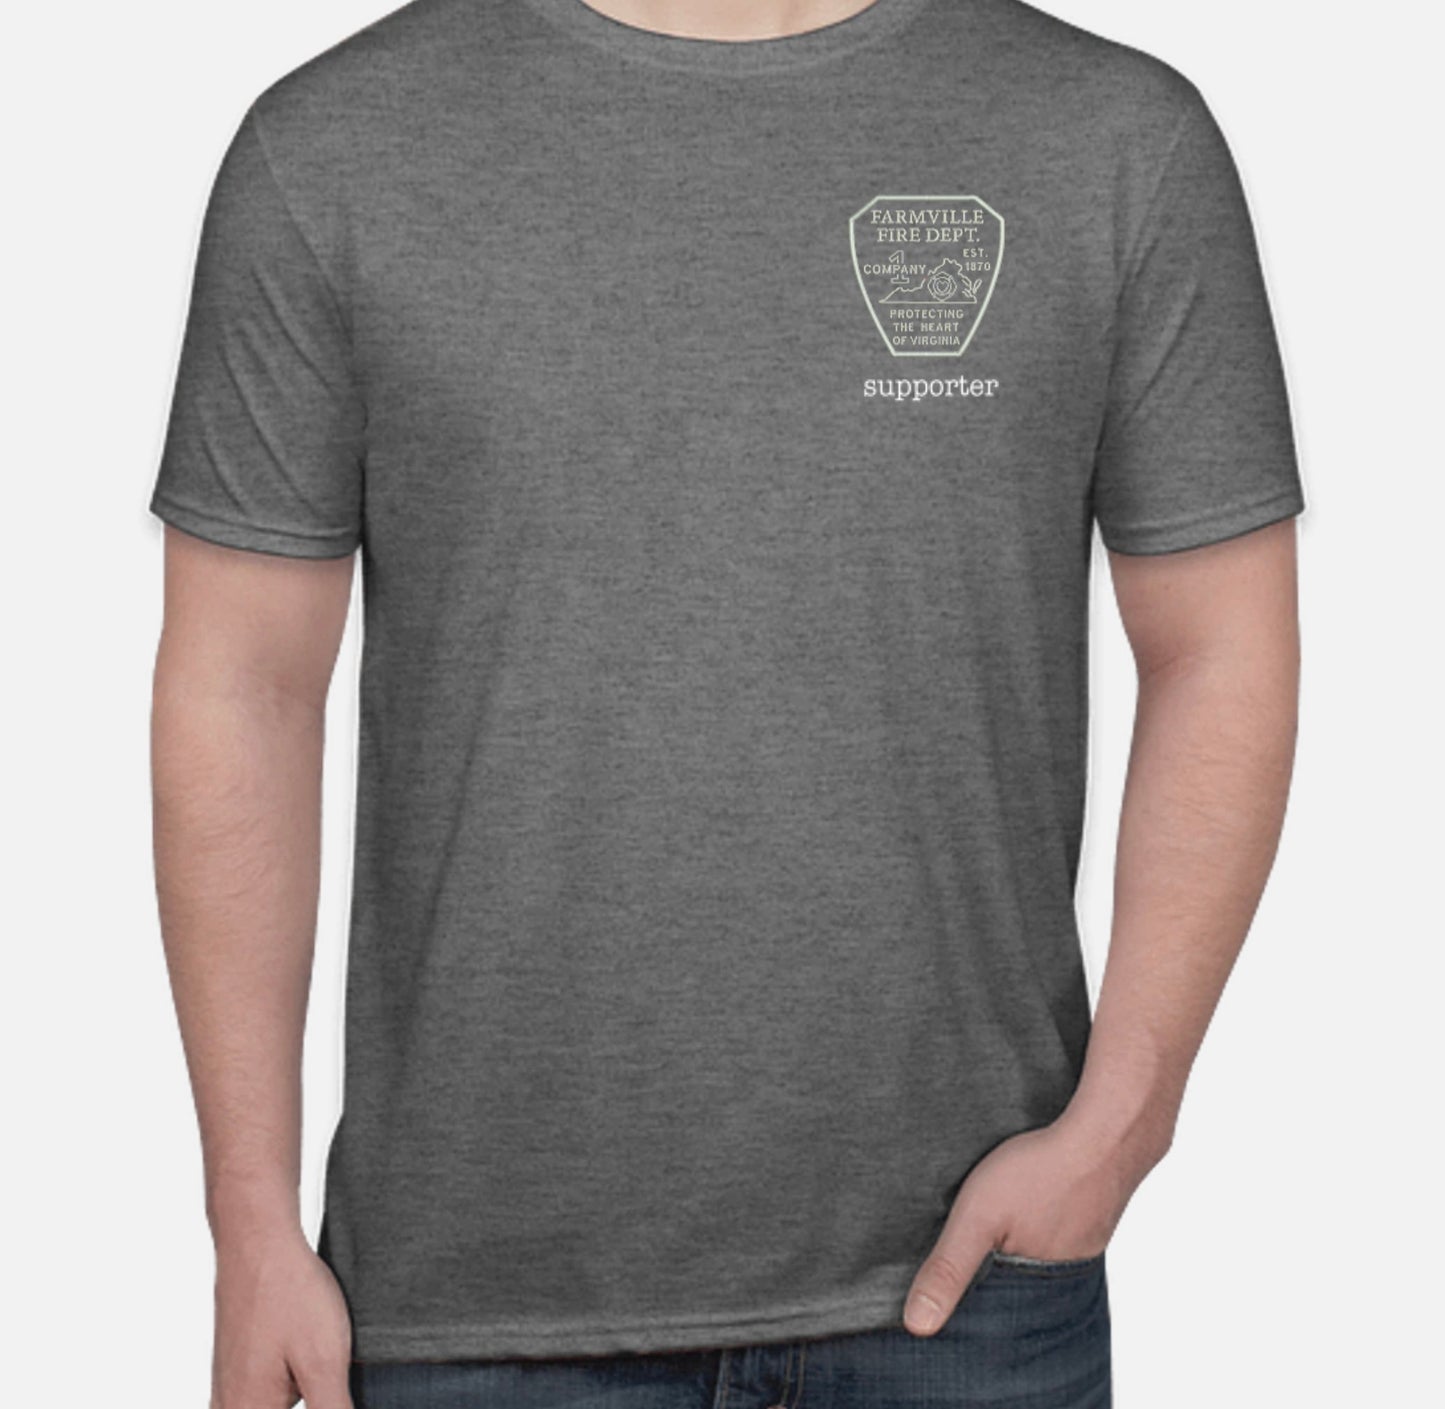 FVFD Supporter T-Shirt